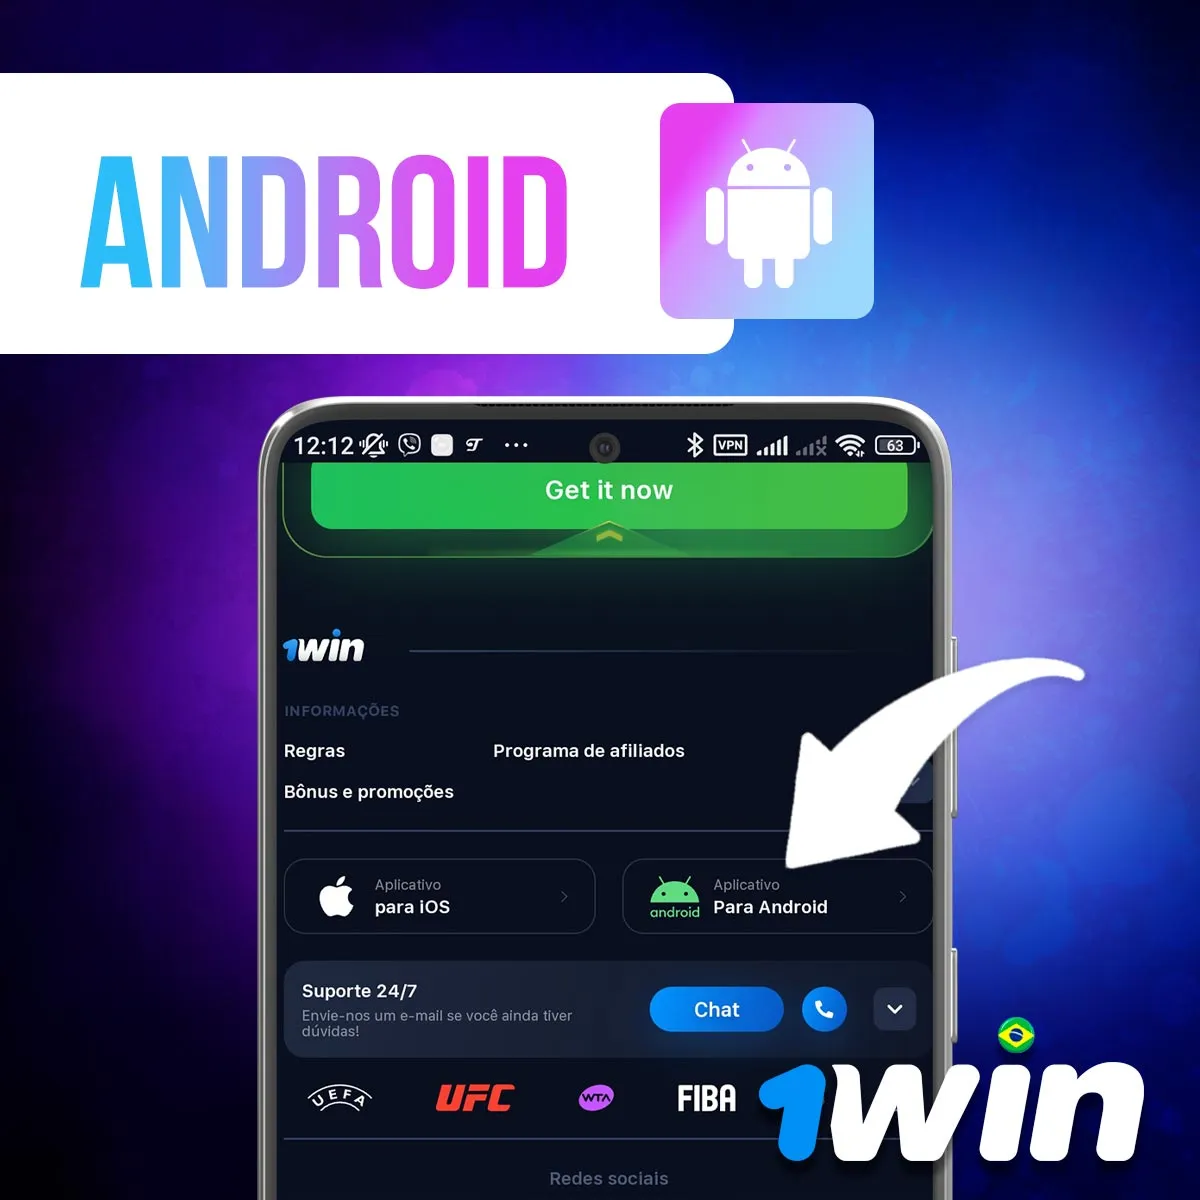 Aplicativo prático para Android da casa de apostas 1win no Brasil